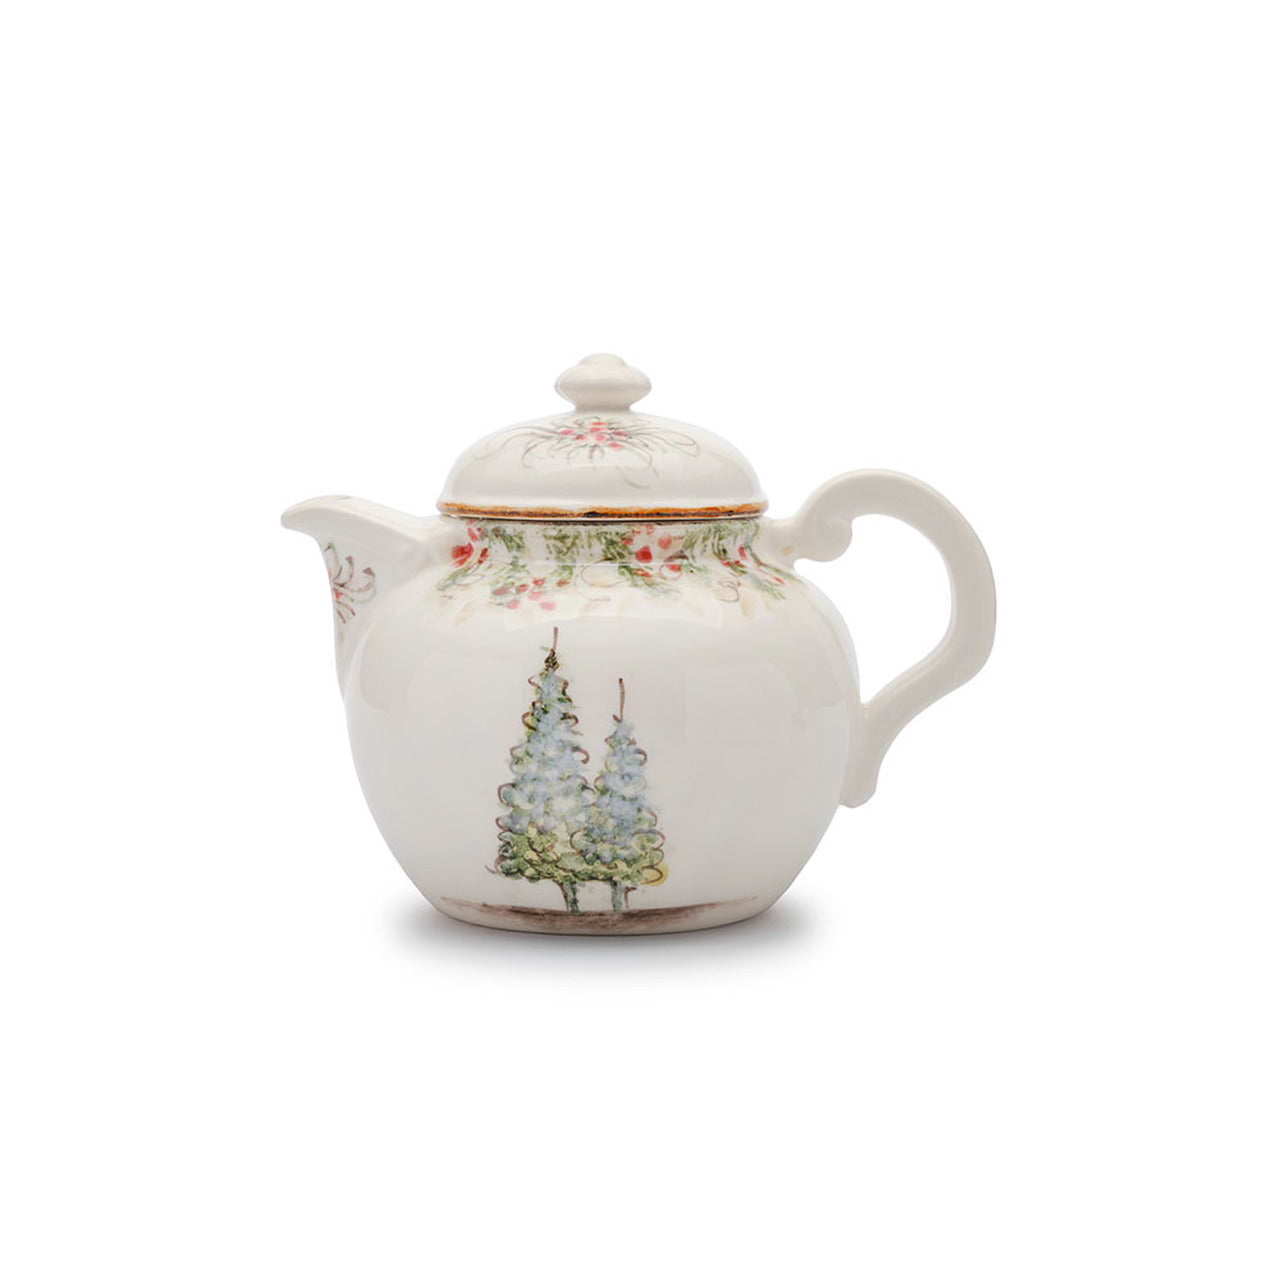 Natale Tea Pot